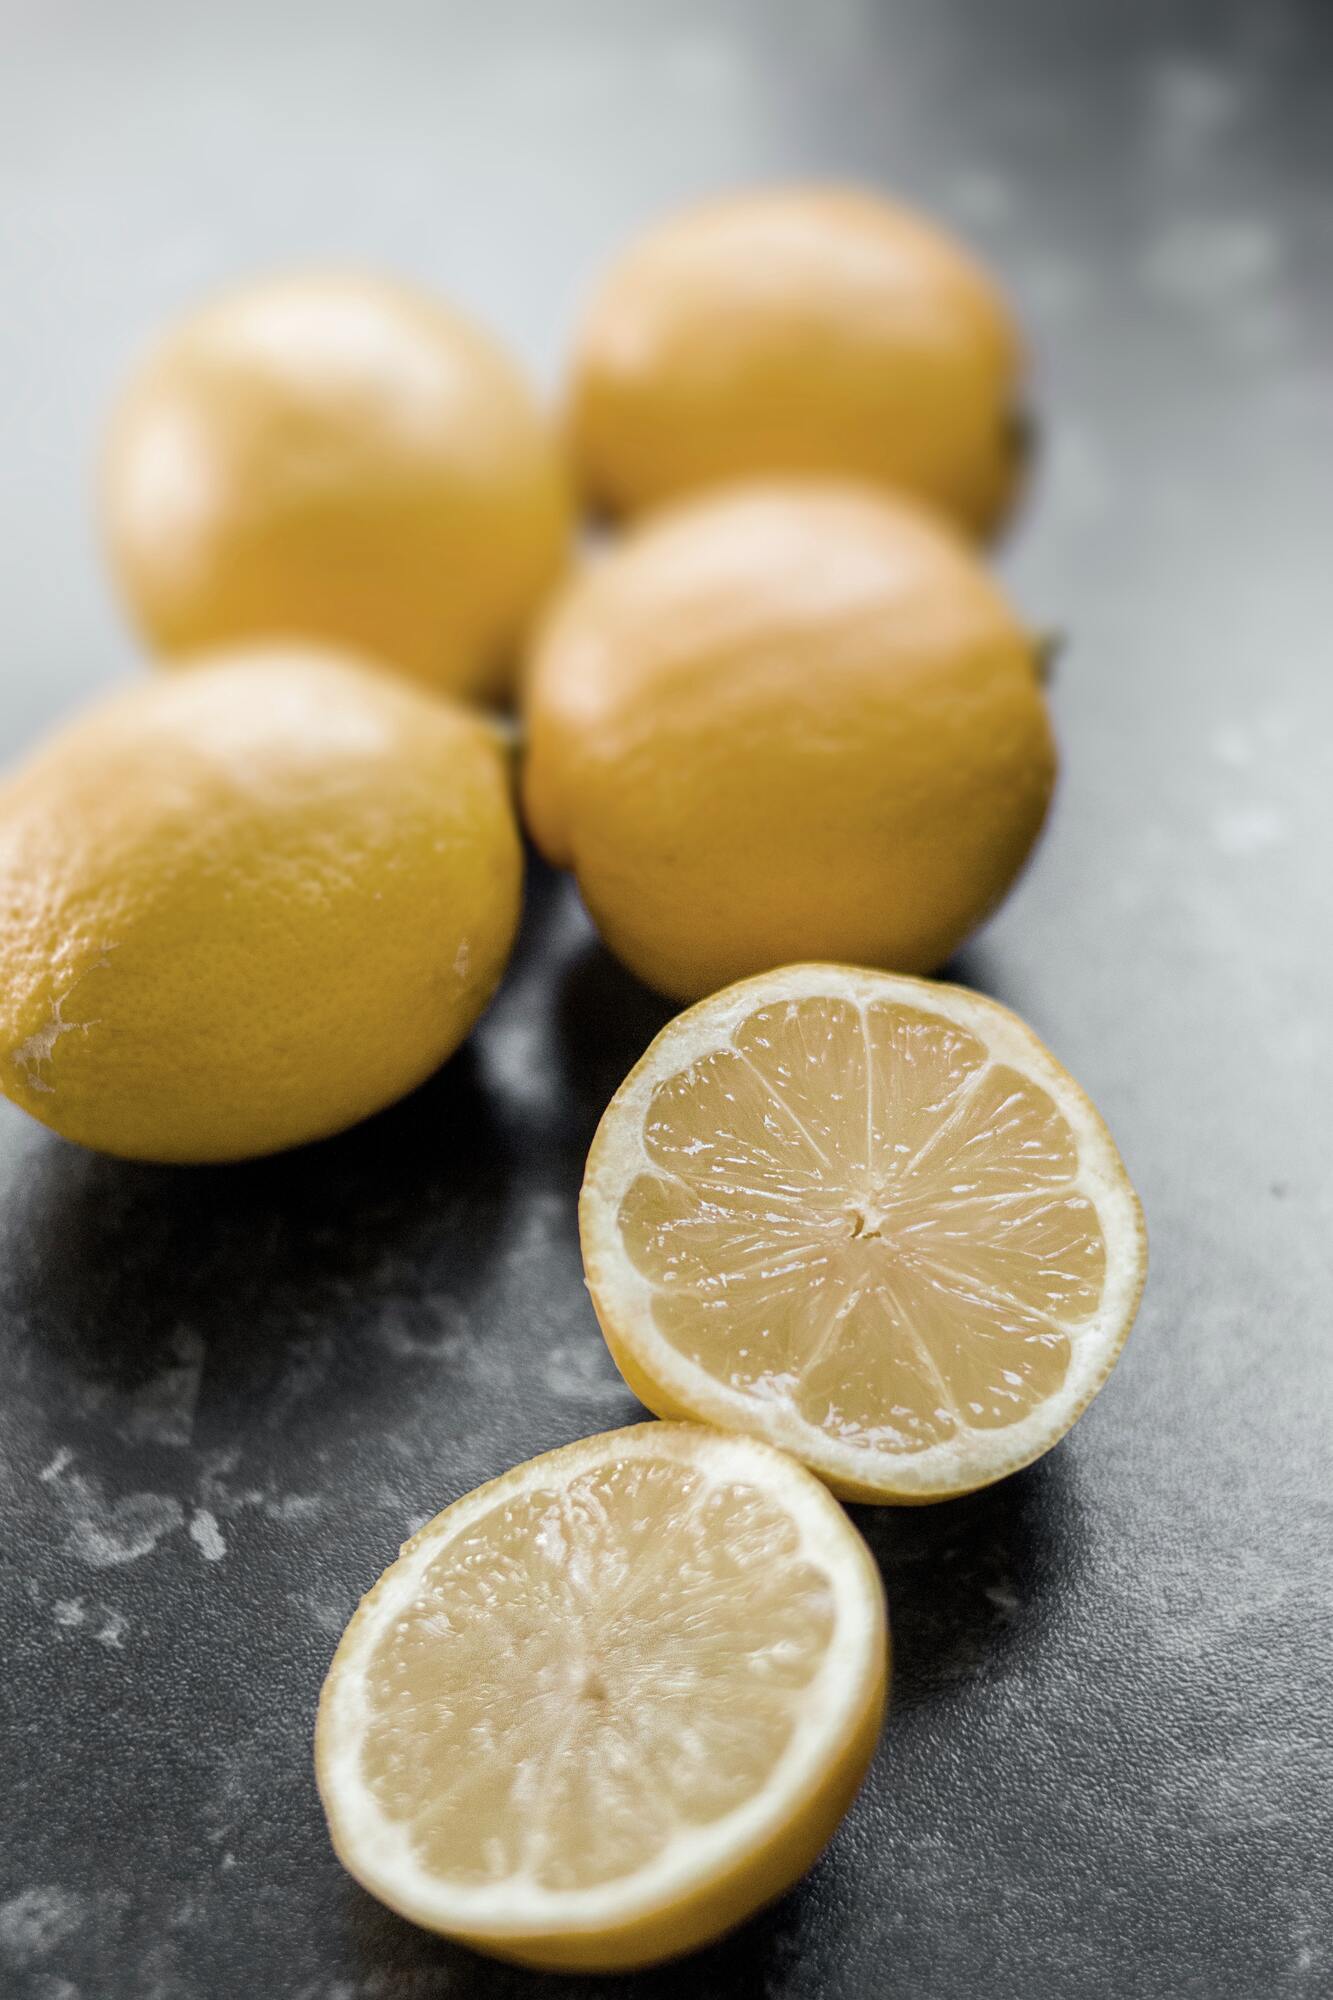 Lemon for jam